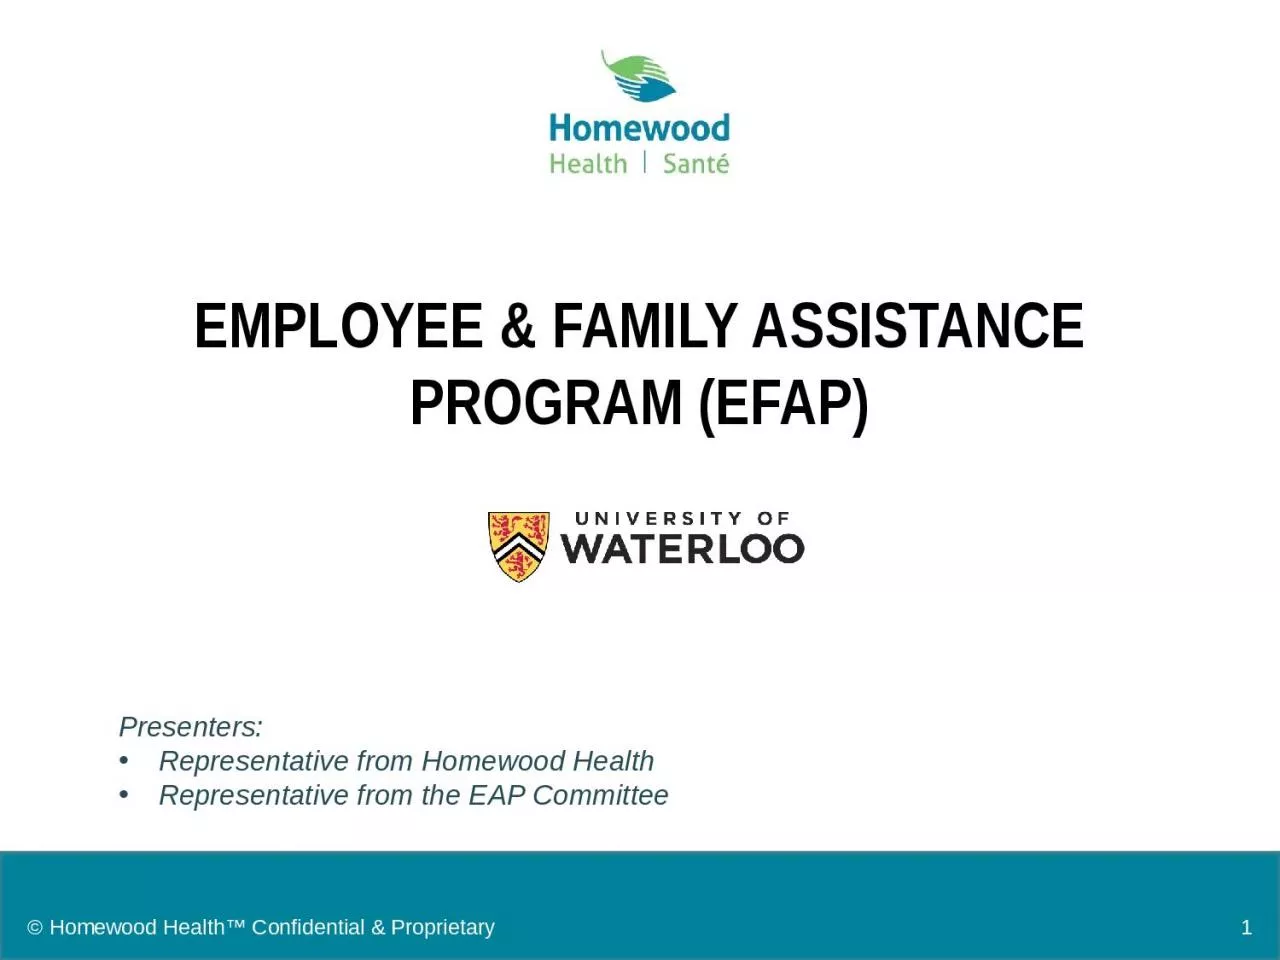 Employee & Family Assistance Program (EFAP)